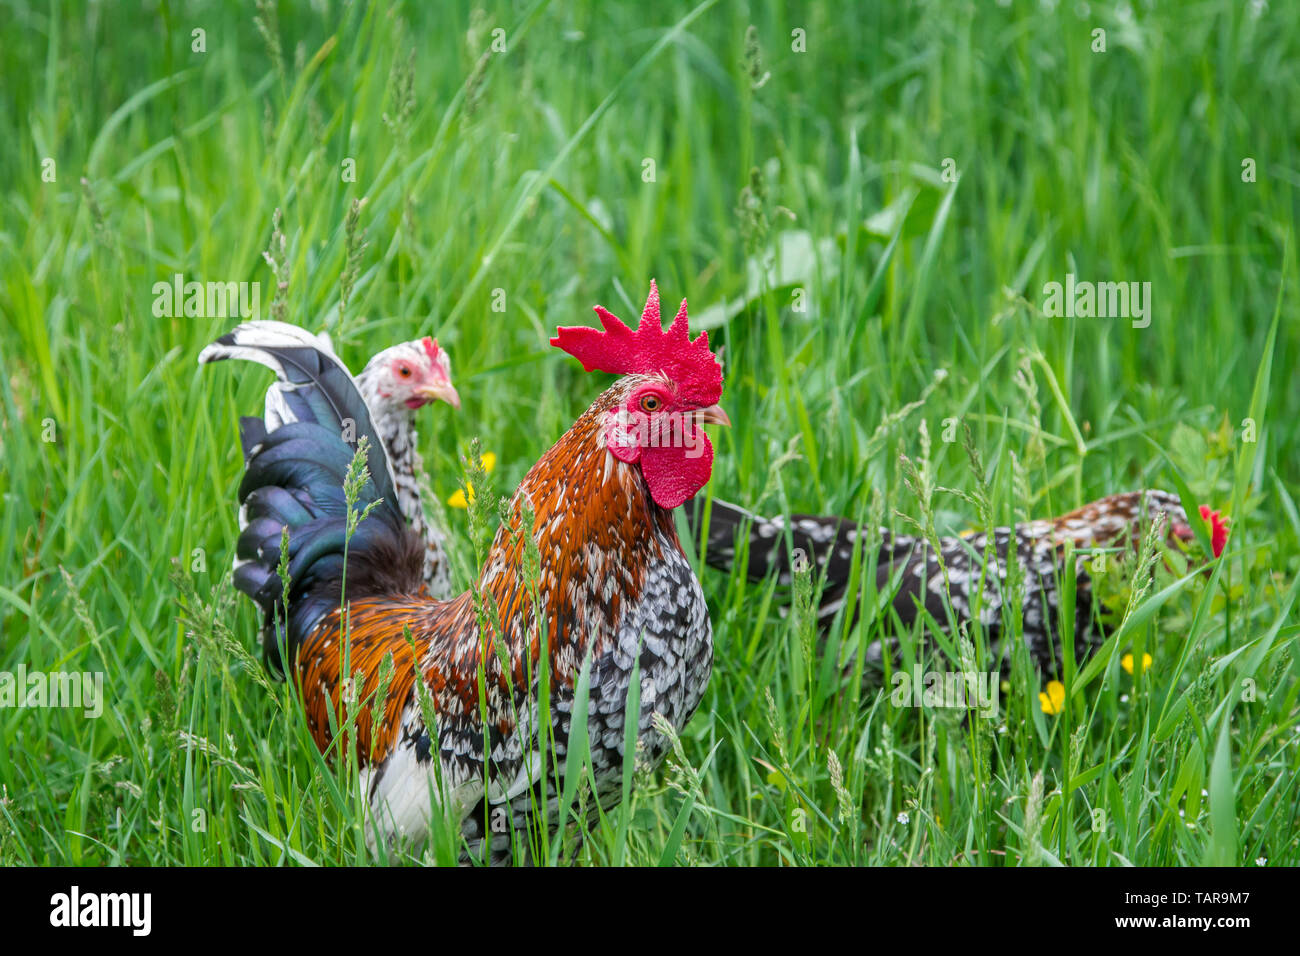 Steinpiperl Steinhendl Stoapiperl - - - - groupe de poulet Poulet de race en danger critique d'Autriche en libre pâturage (Gallus gallus domesticus) Banque D'Images